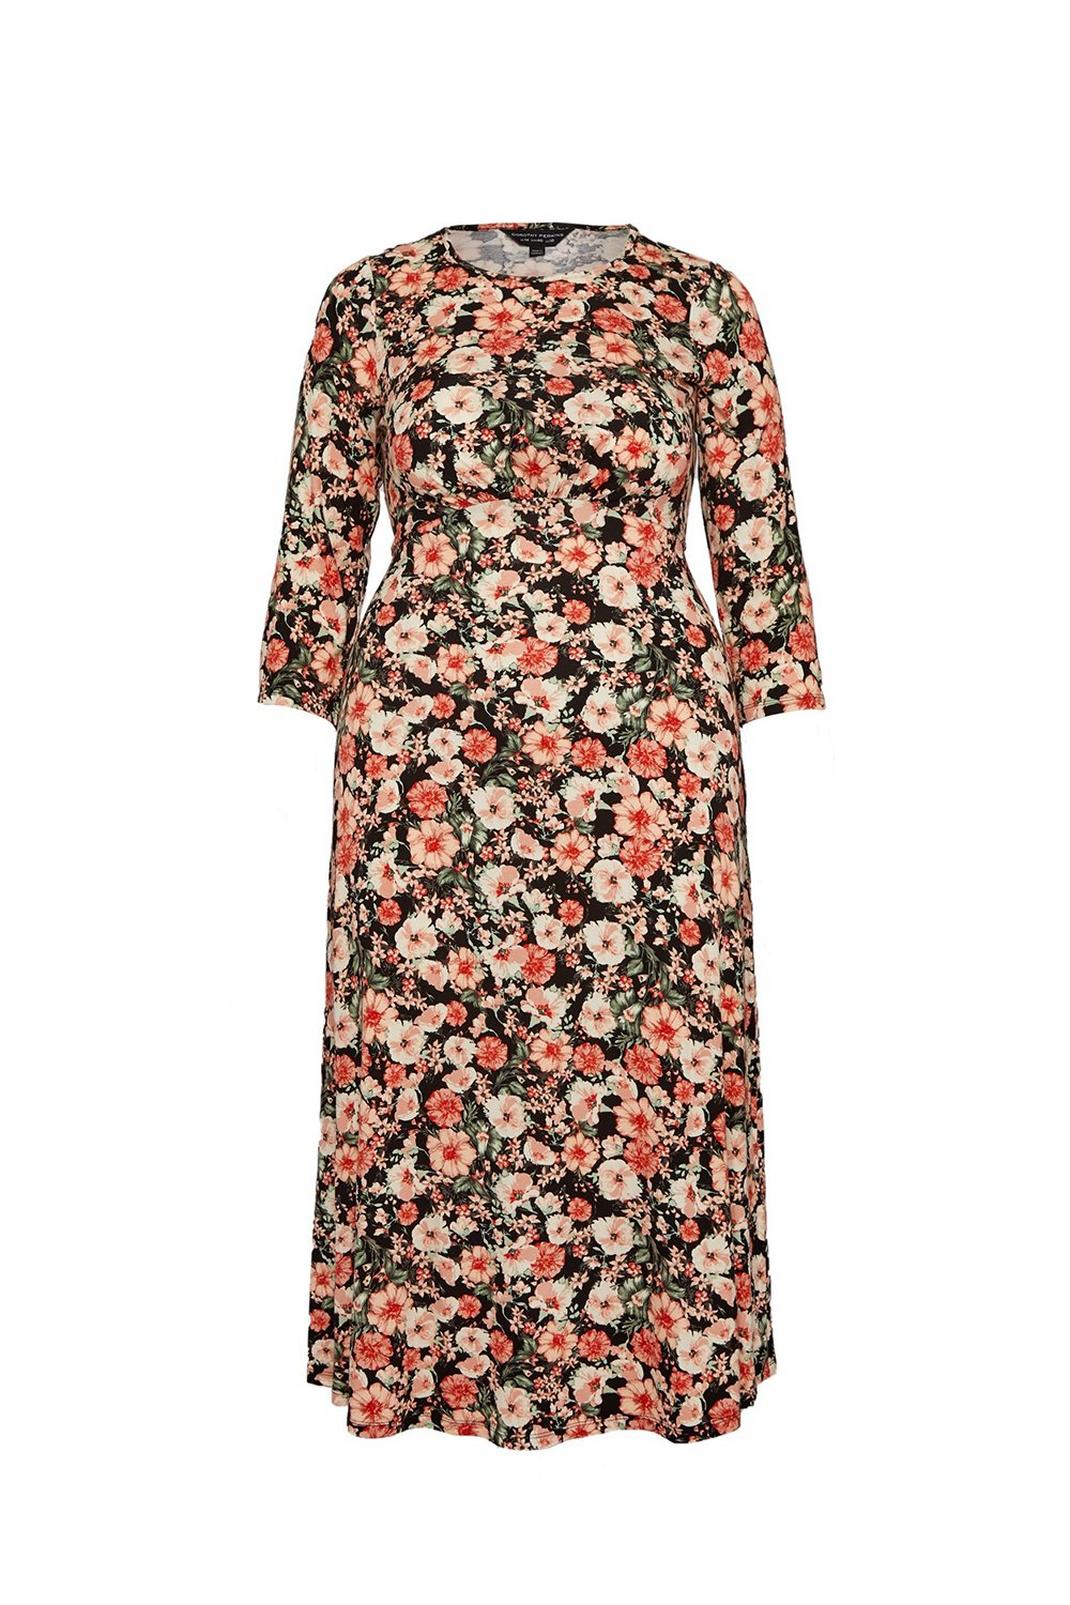 Curve Black Floral Empire Seam Midi Dress | Dorothy Perkins EU